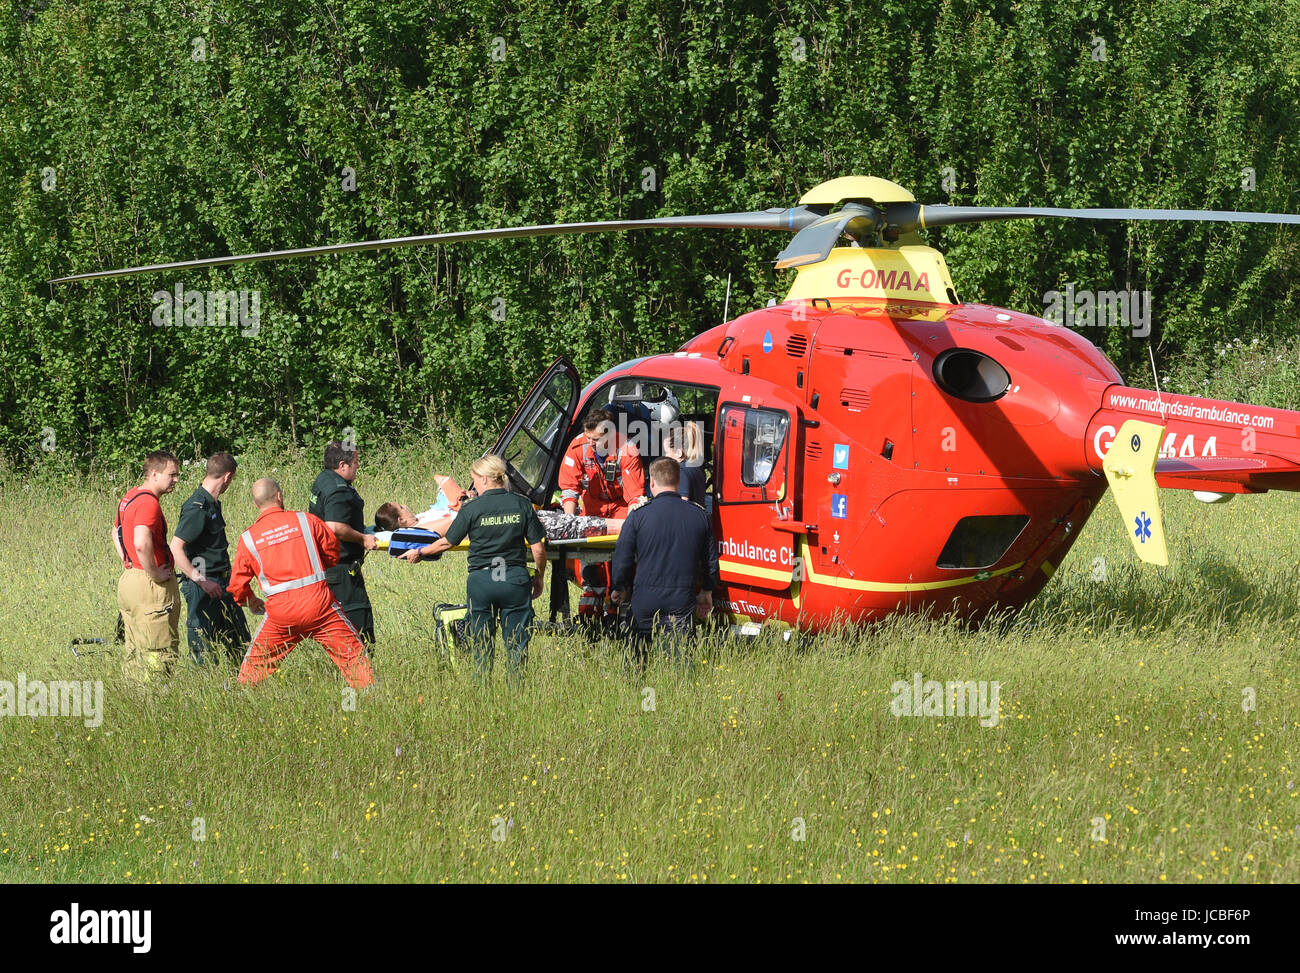 West Midlands et l'équipe médicale d'Ambulance paramedics NHS levage d'une accident de la patient dans l'hélicoptère Uk Banque D'Images